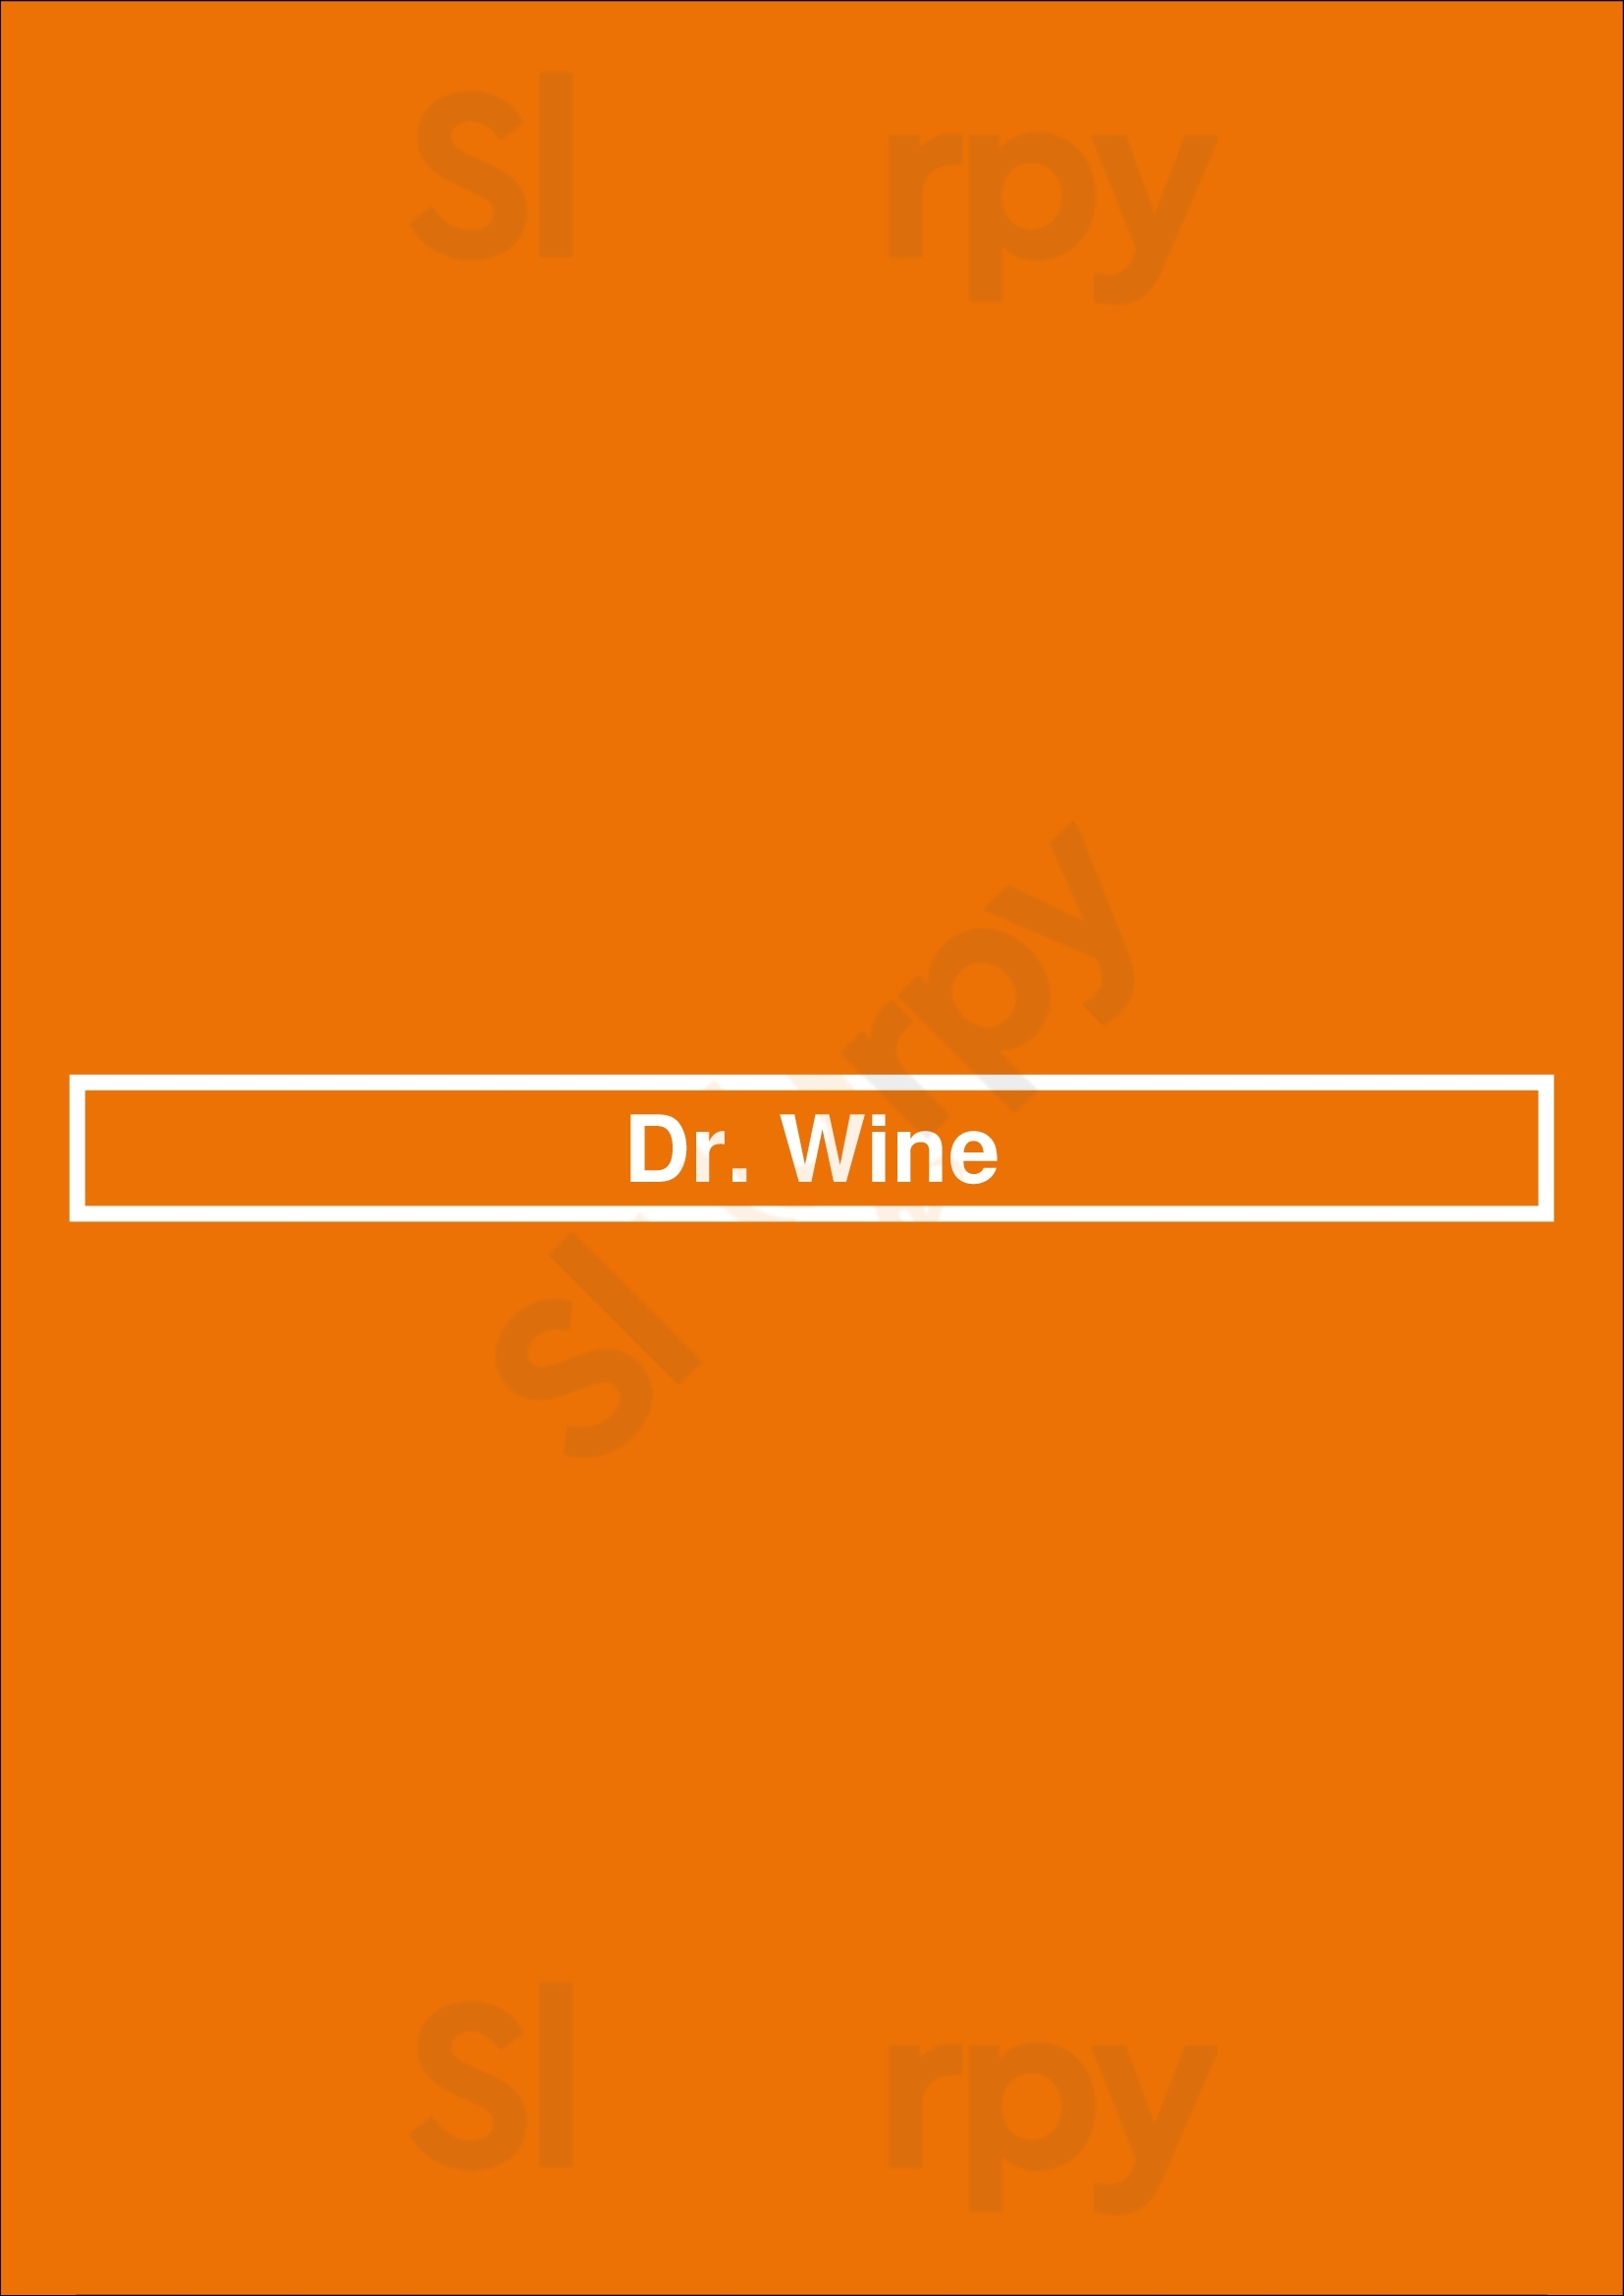 Dr. Wine Lisboa Menu - 1